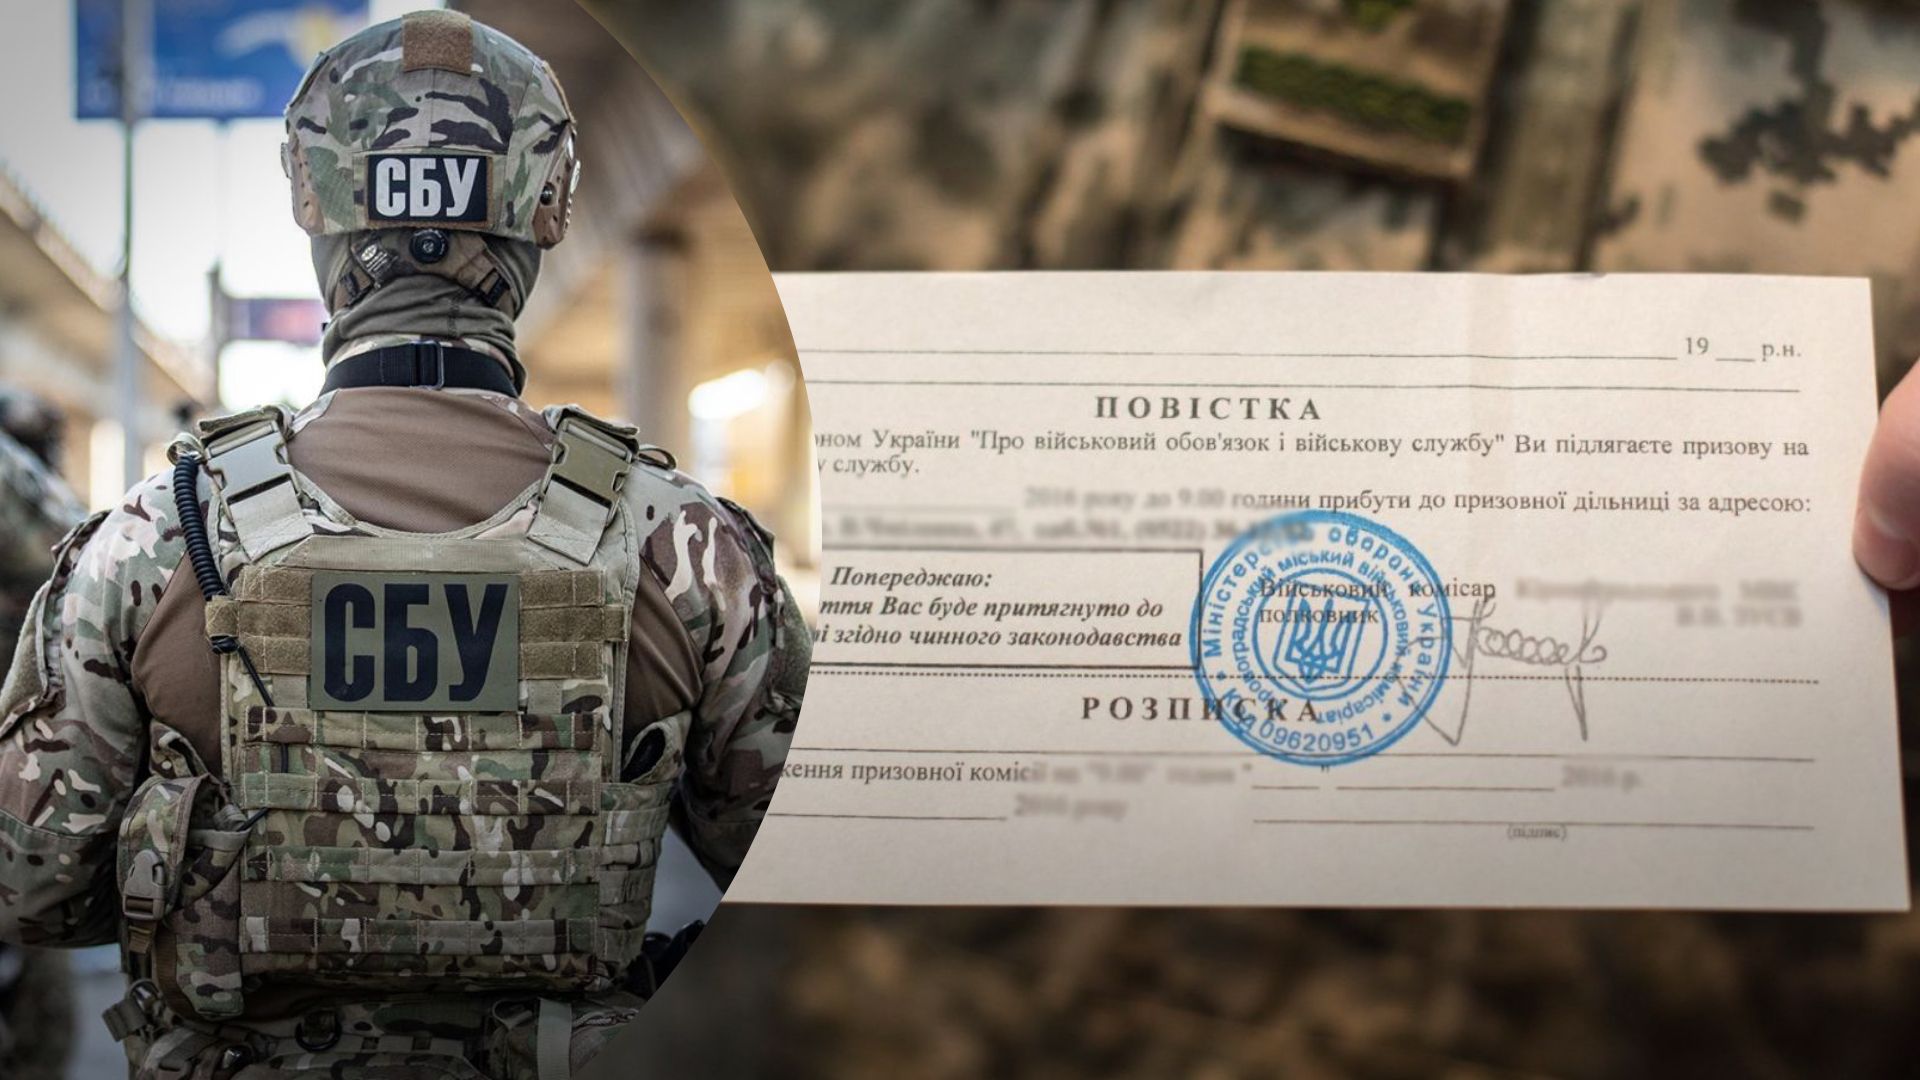 Мобилизация в Украине – в сети распространяют фейк, что СБУ угрожает украинцам за границей